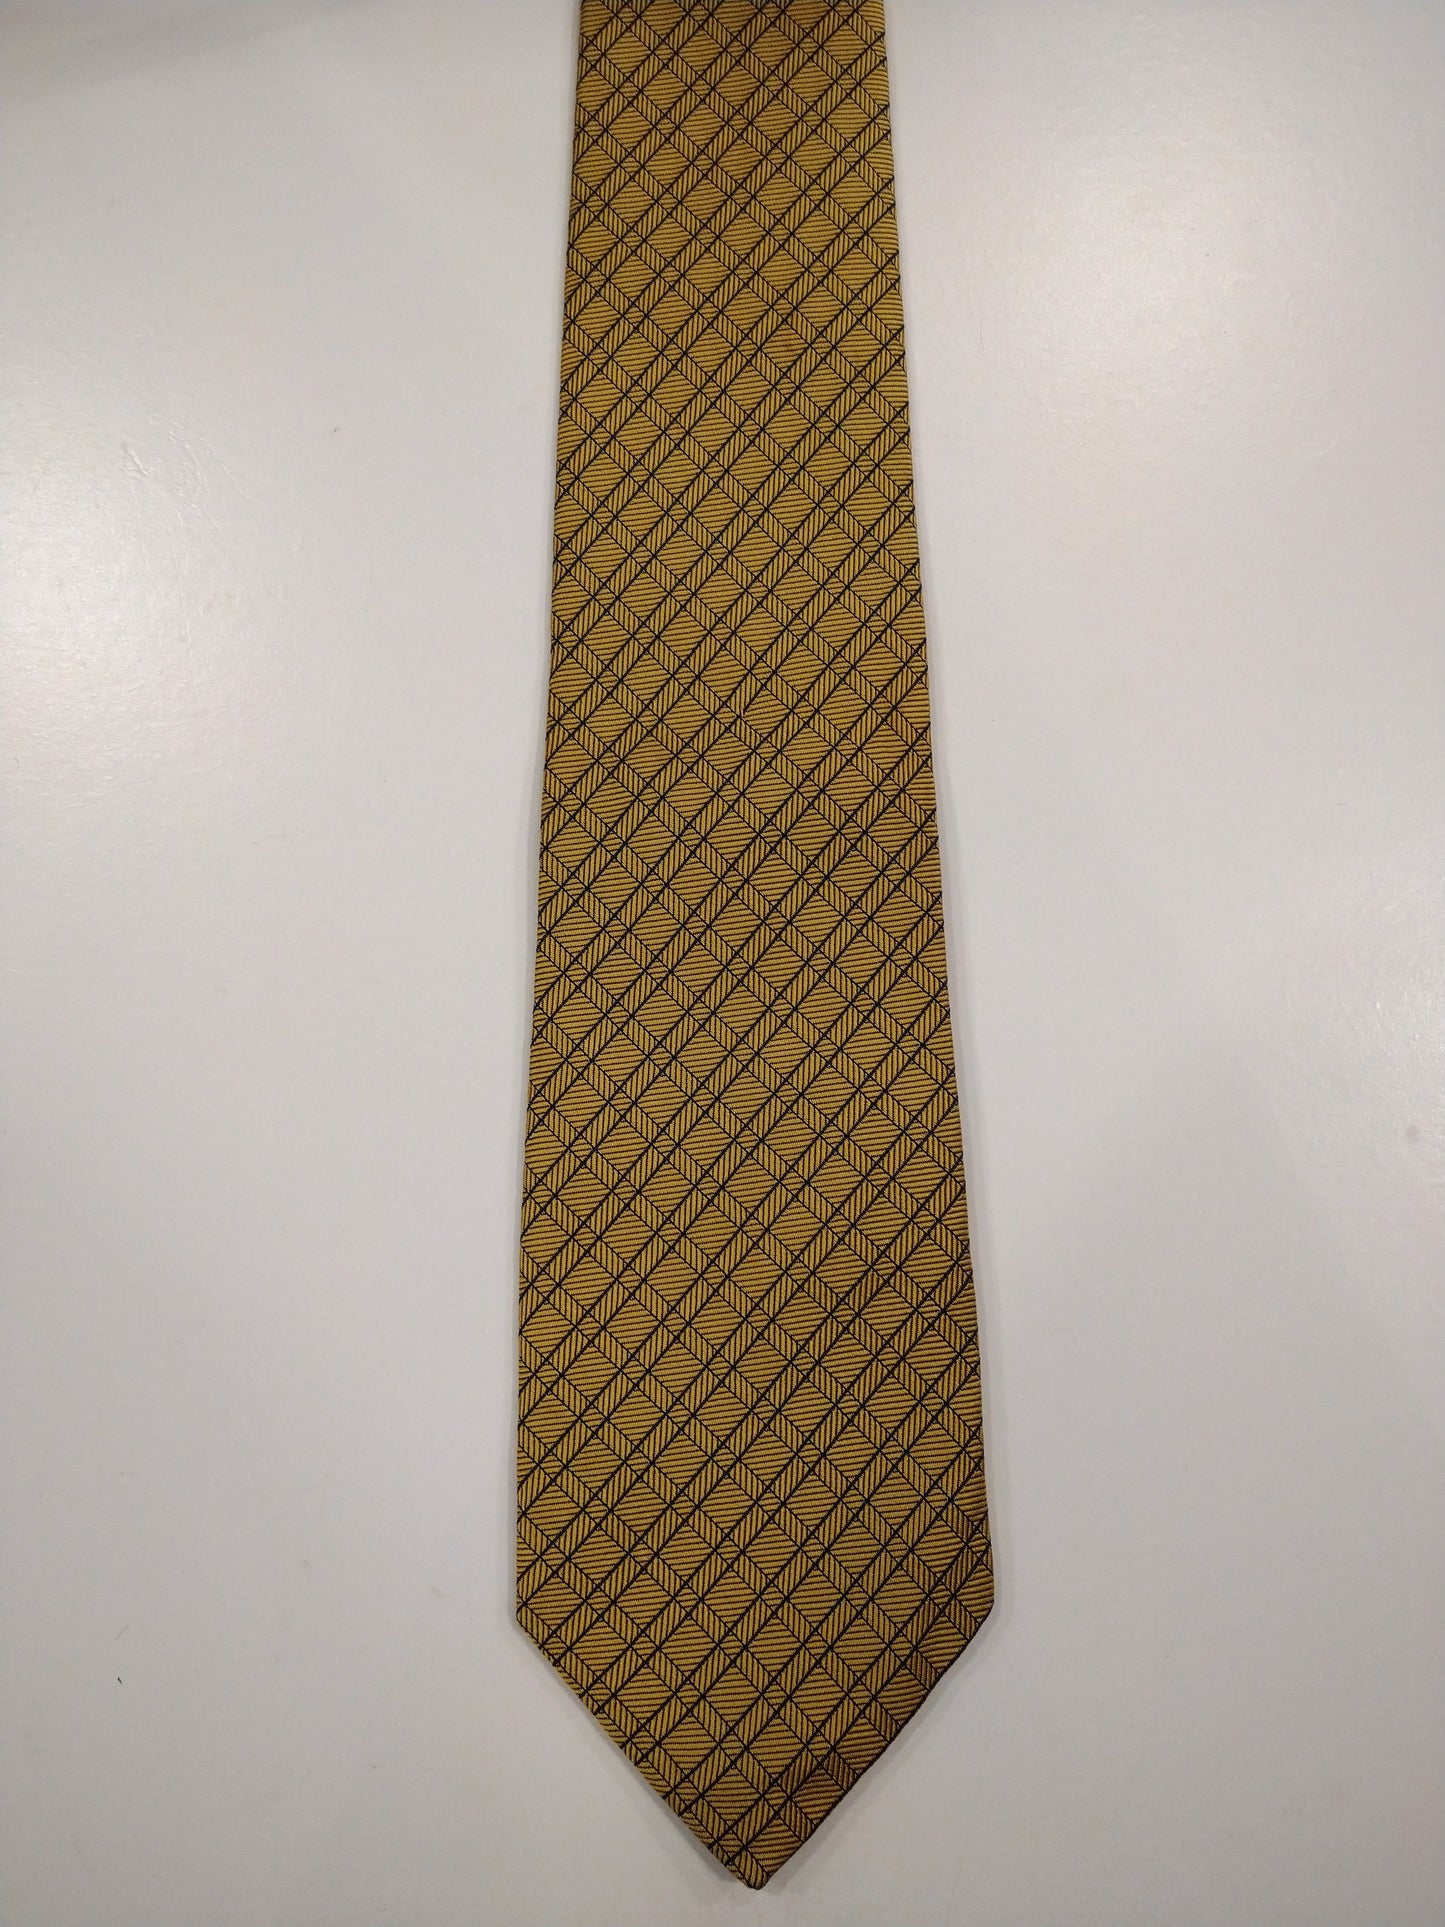 La corbata de seda a mano de sombrerero inglesa. Rayas de color azul dorado.